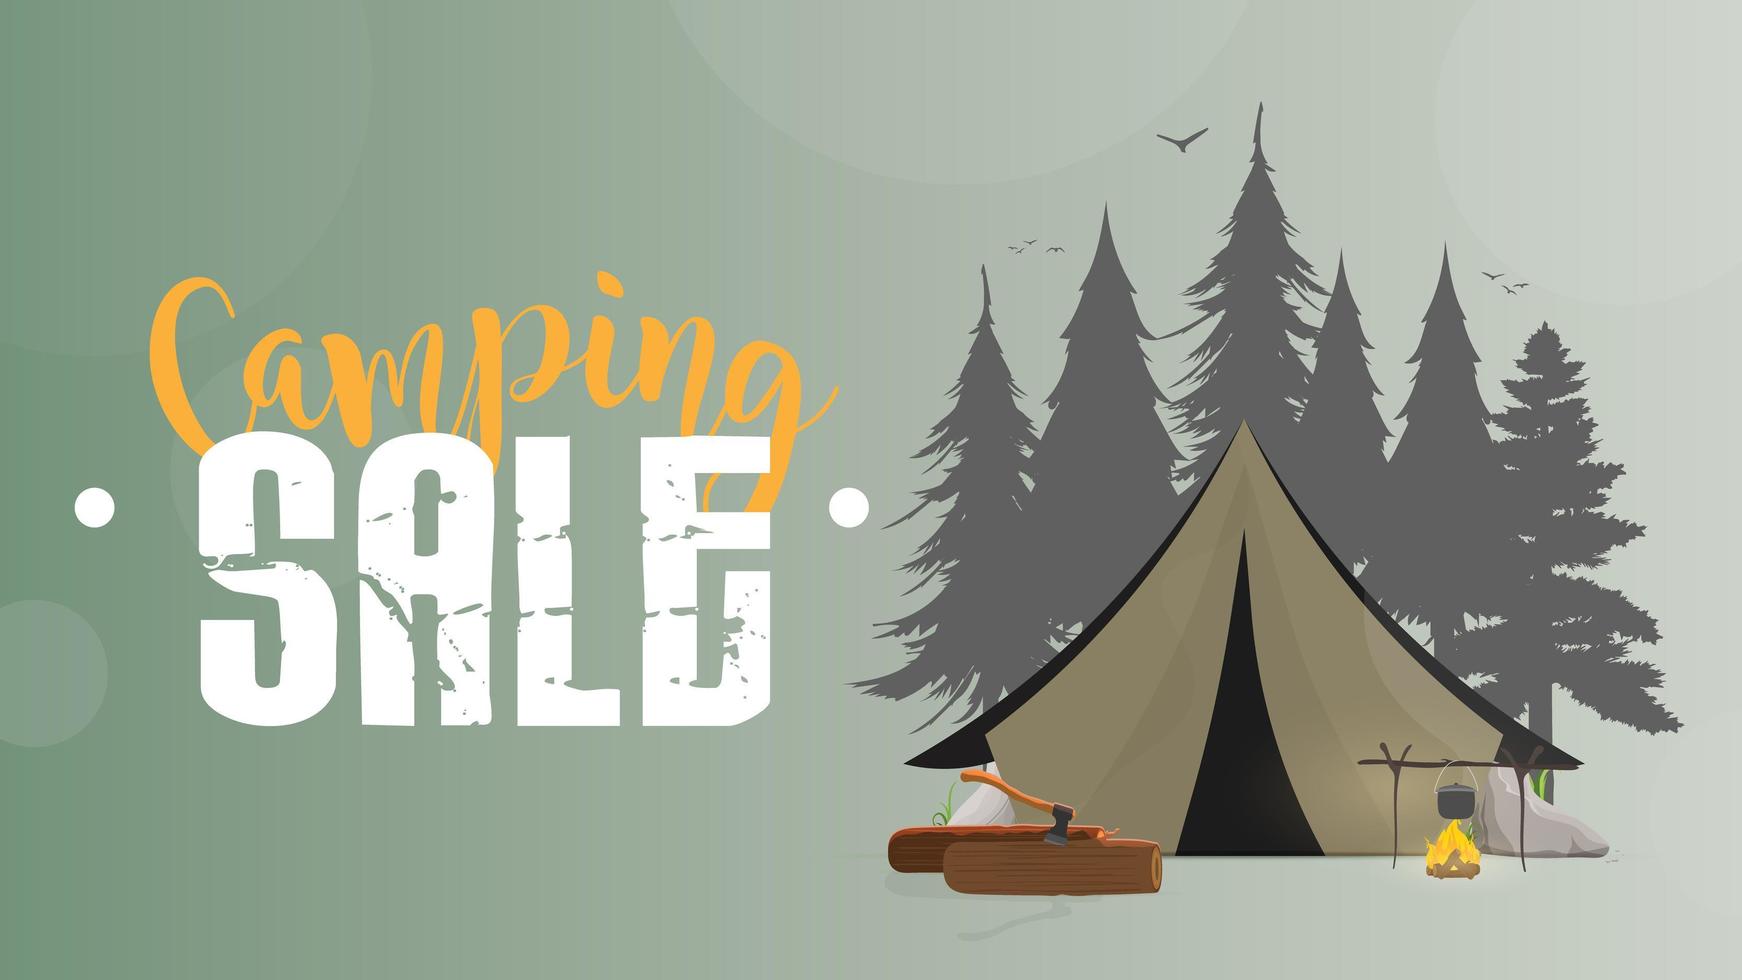 vente de camping. bannière verte. tente, forêts silhouettes, feu de joie, bûches, hache, tente, rivière, arbres. illustration vectorielle vecteur